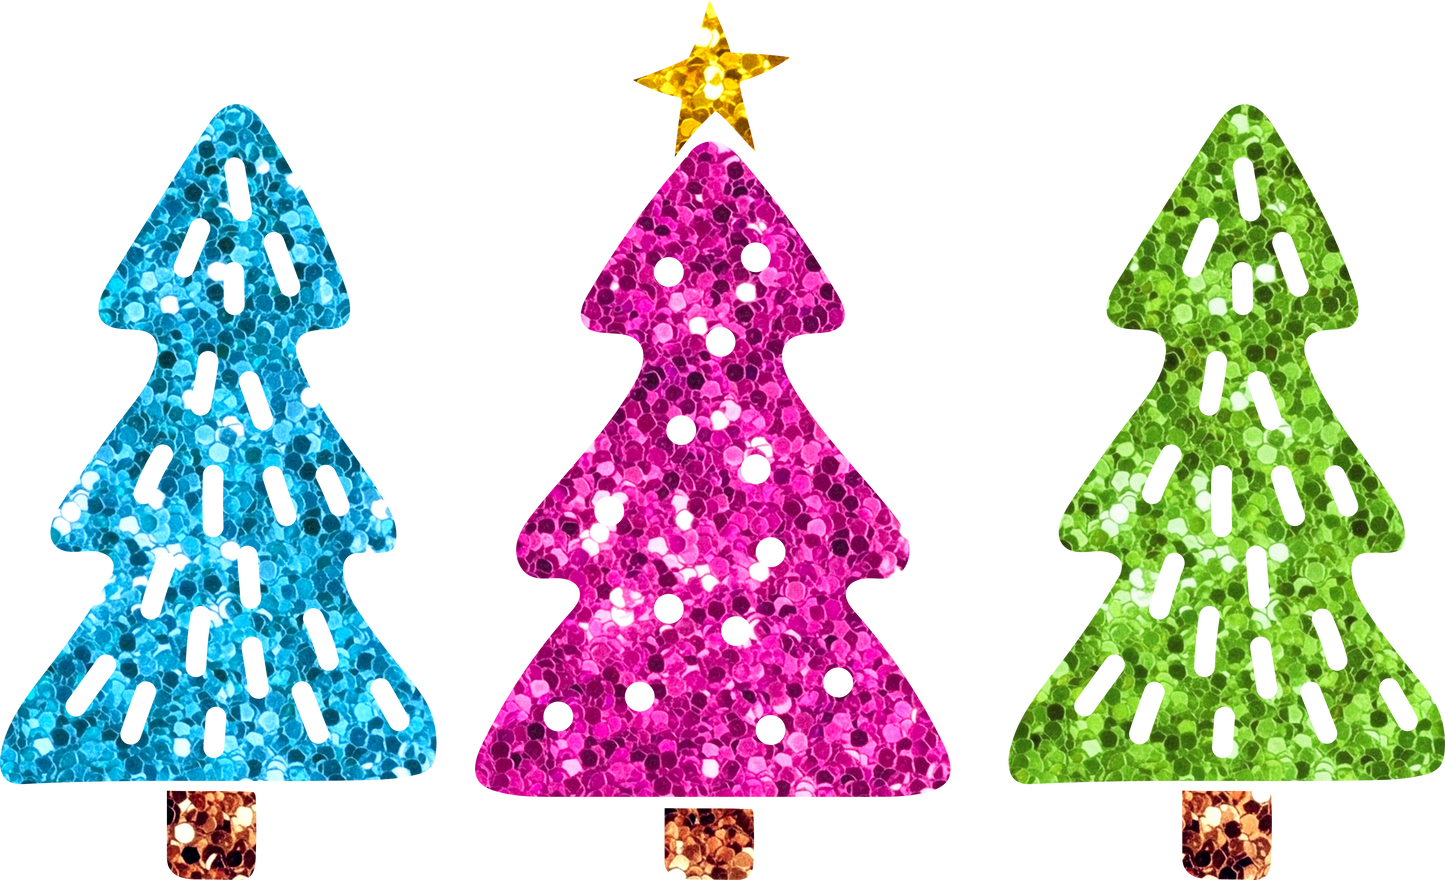 Glitter Christmas Trees